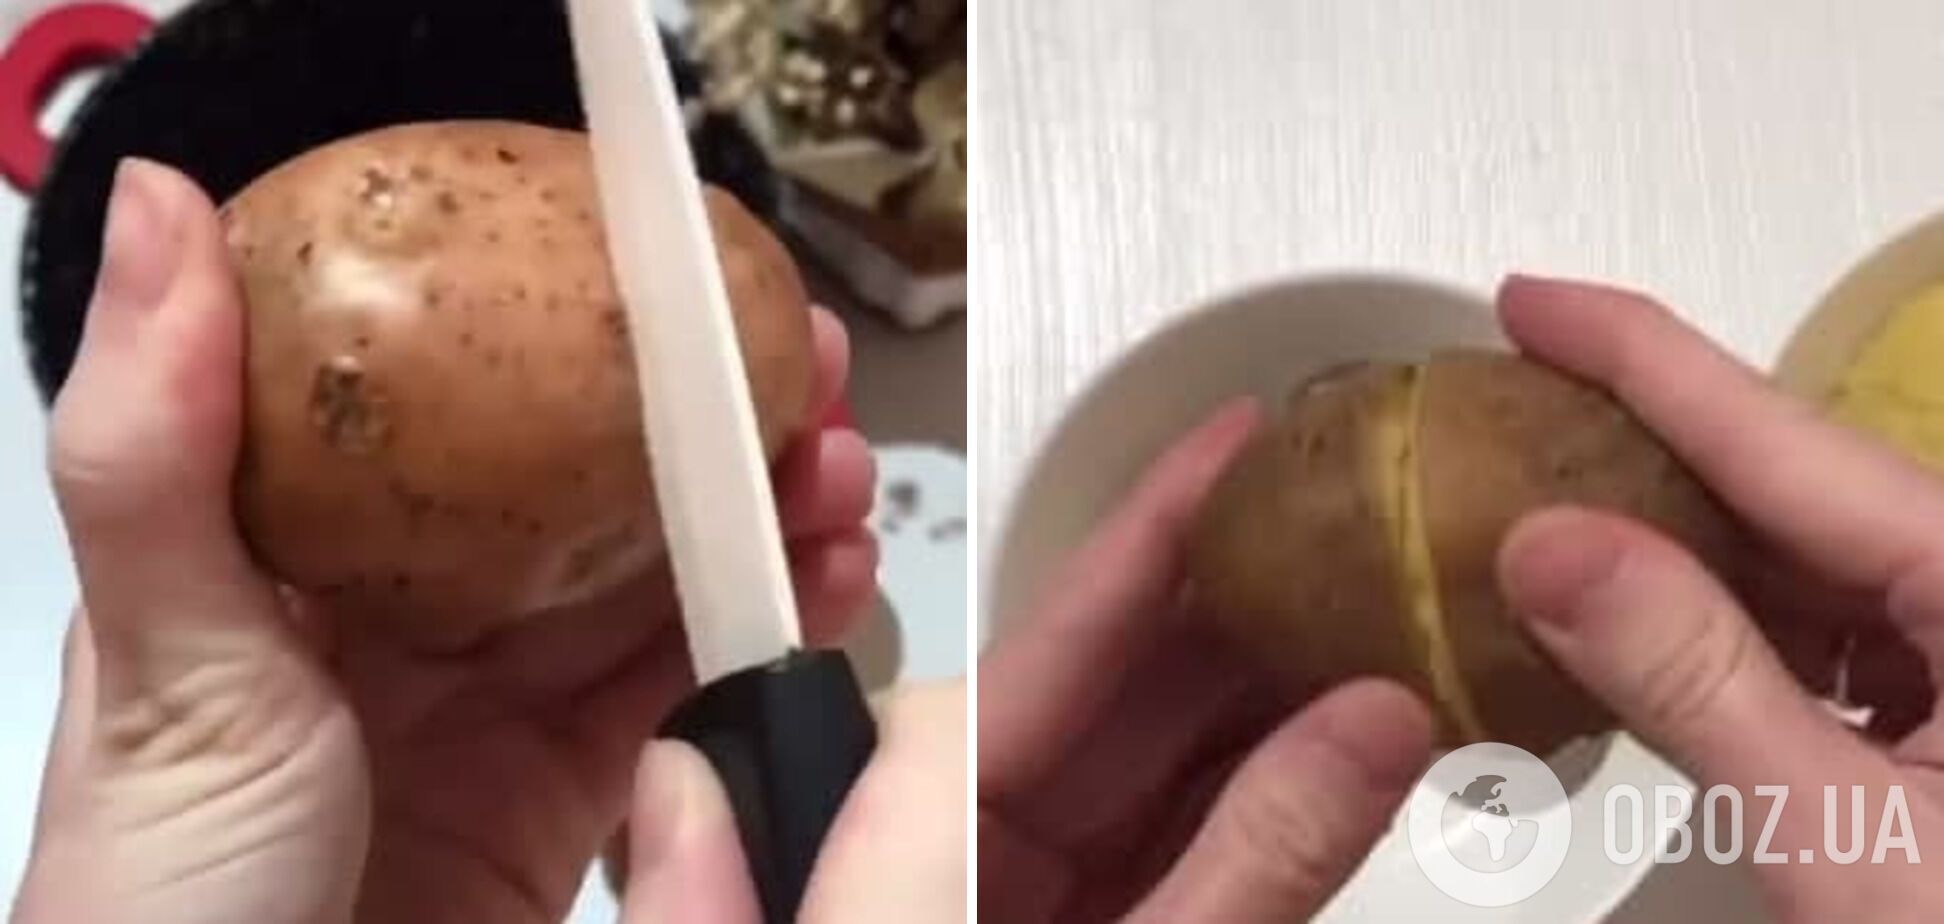 Технологія очищення картоплі в мундирі